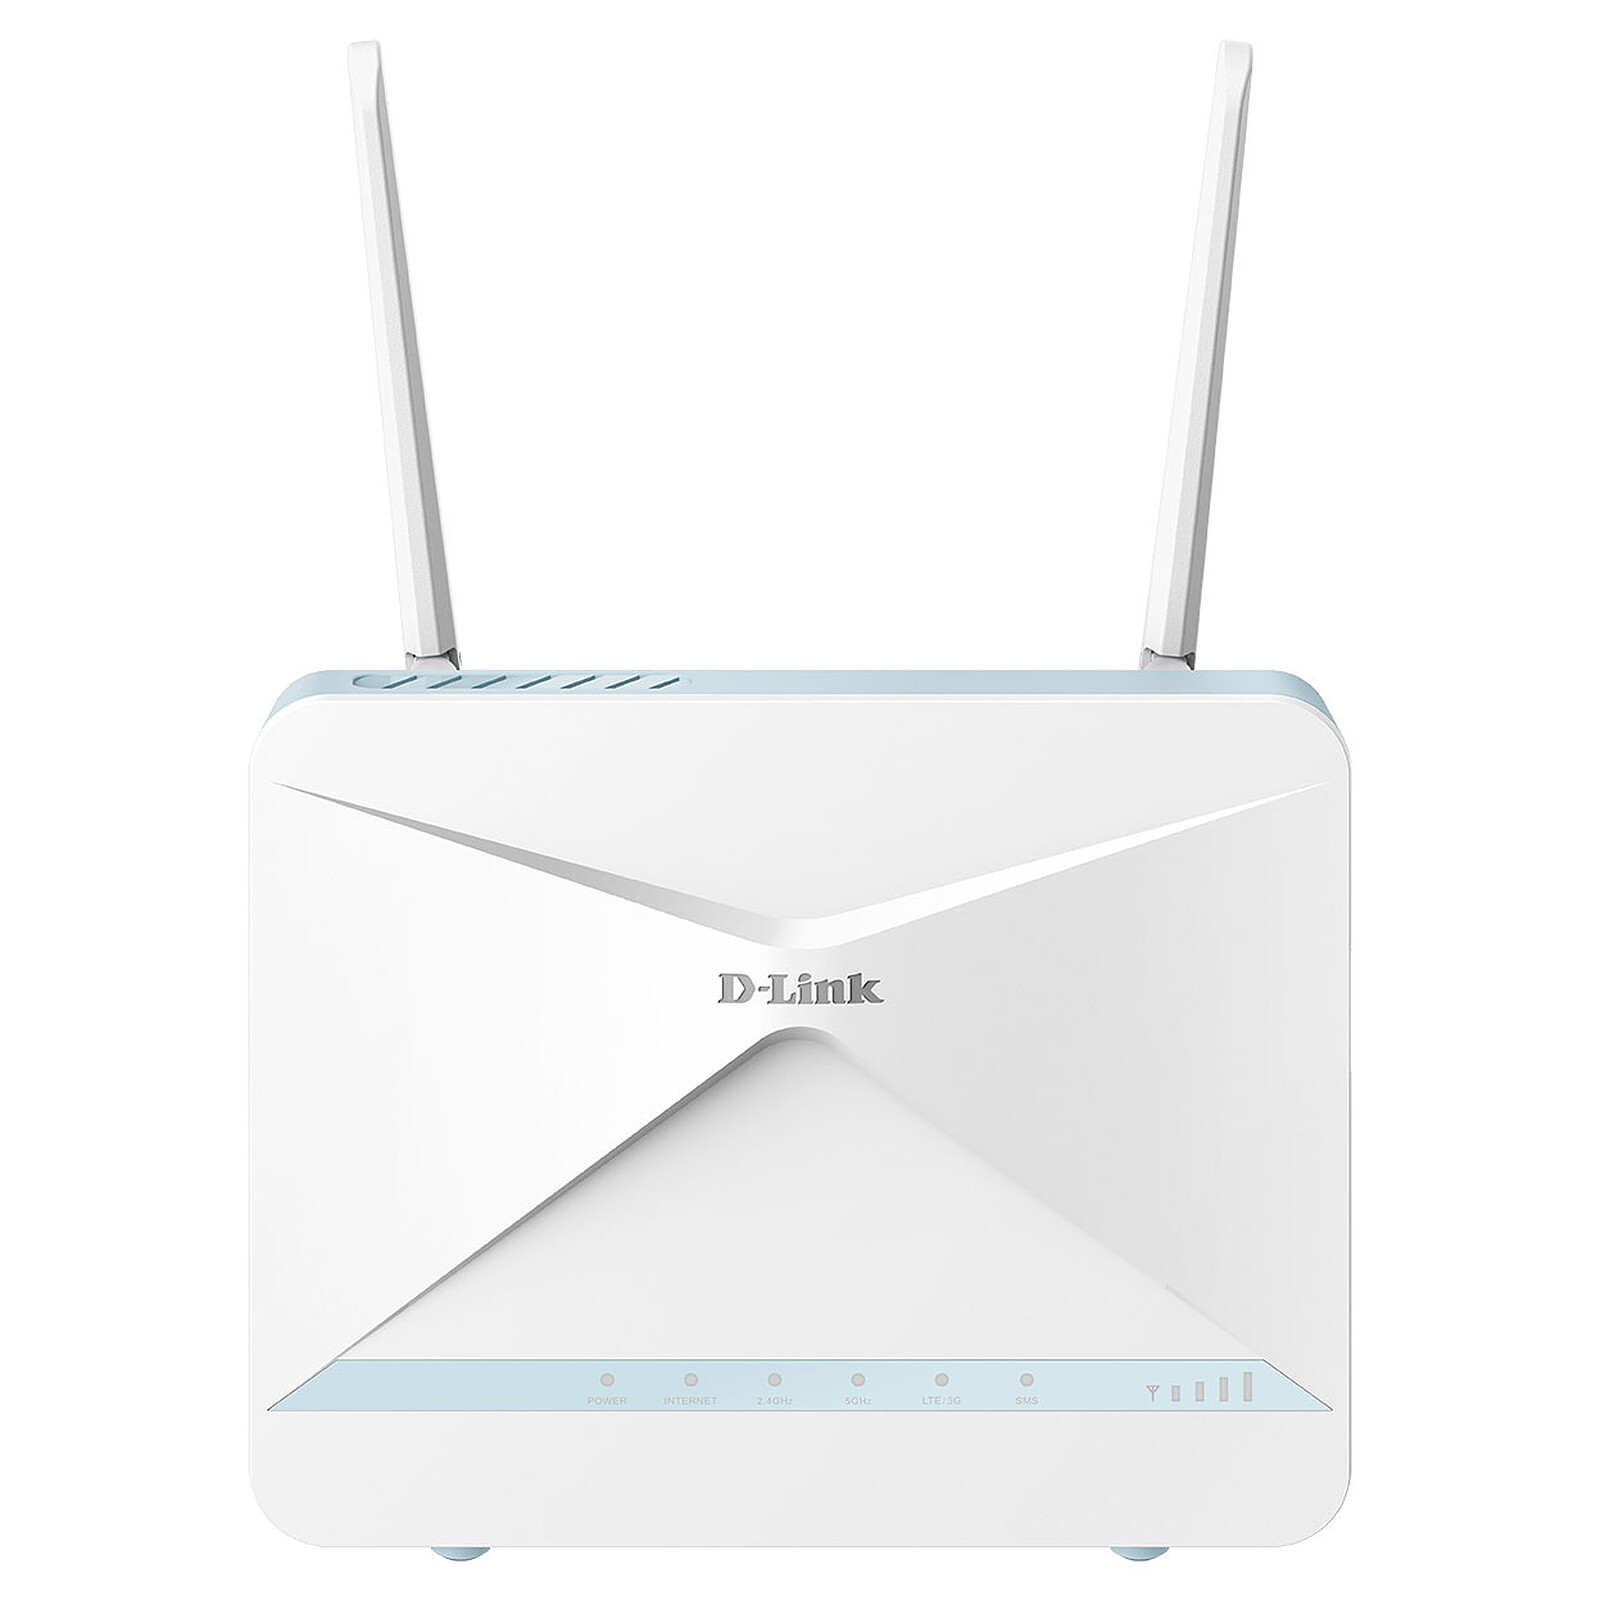 Google Wifi - Modem & routeur - Garantie 3 ans LDLC